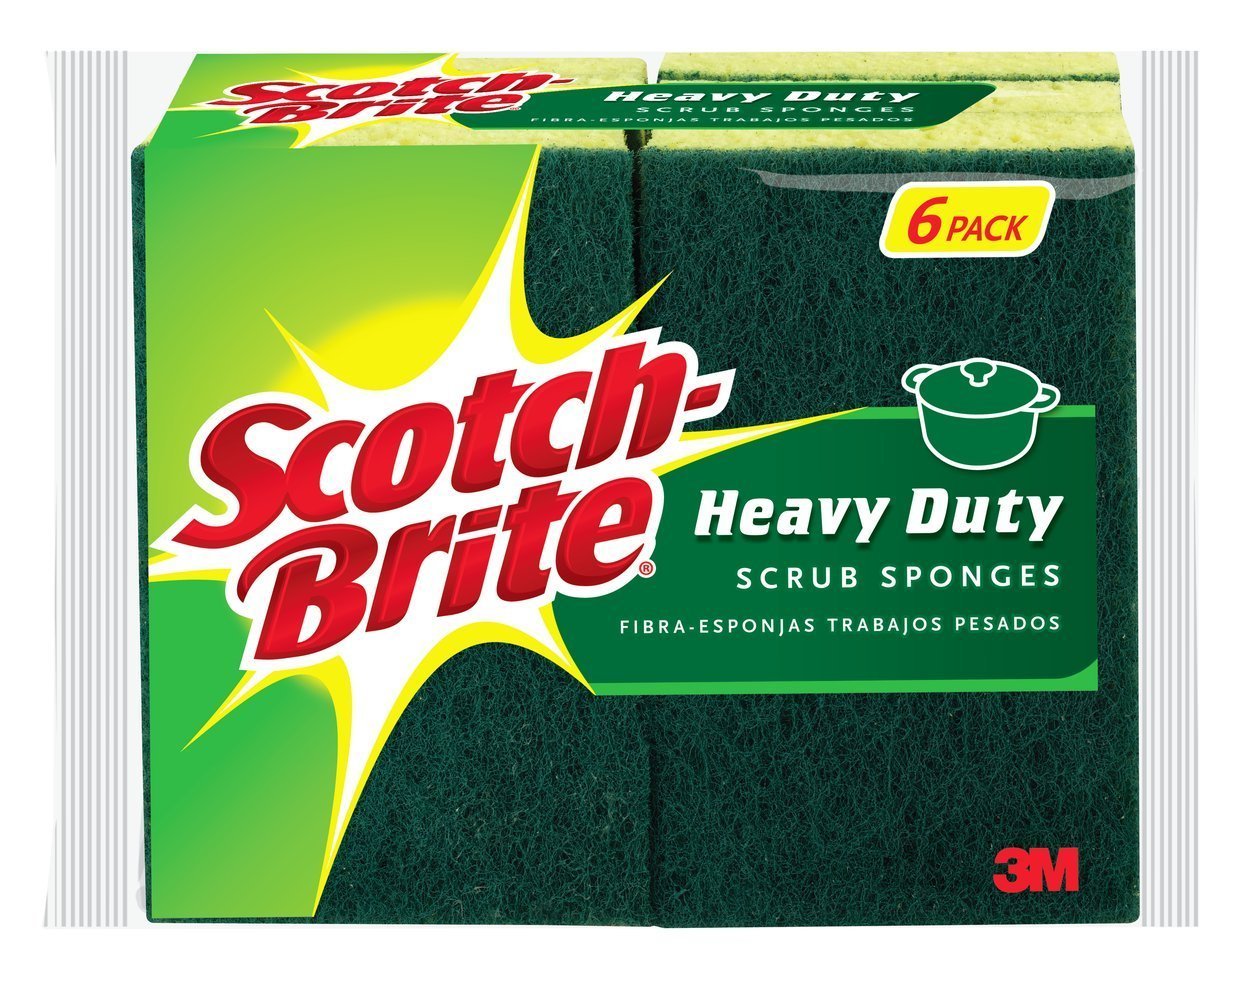 Scotch Brite 3m губка. Scotch-Brite Heavy Duty. Шлифовальный 3m Scotch-Brite. Scotch Brite 3m в Ташкенте.